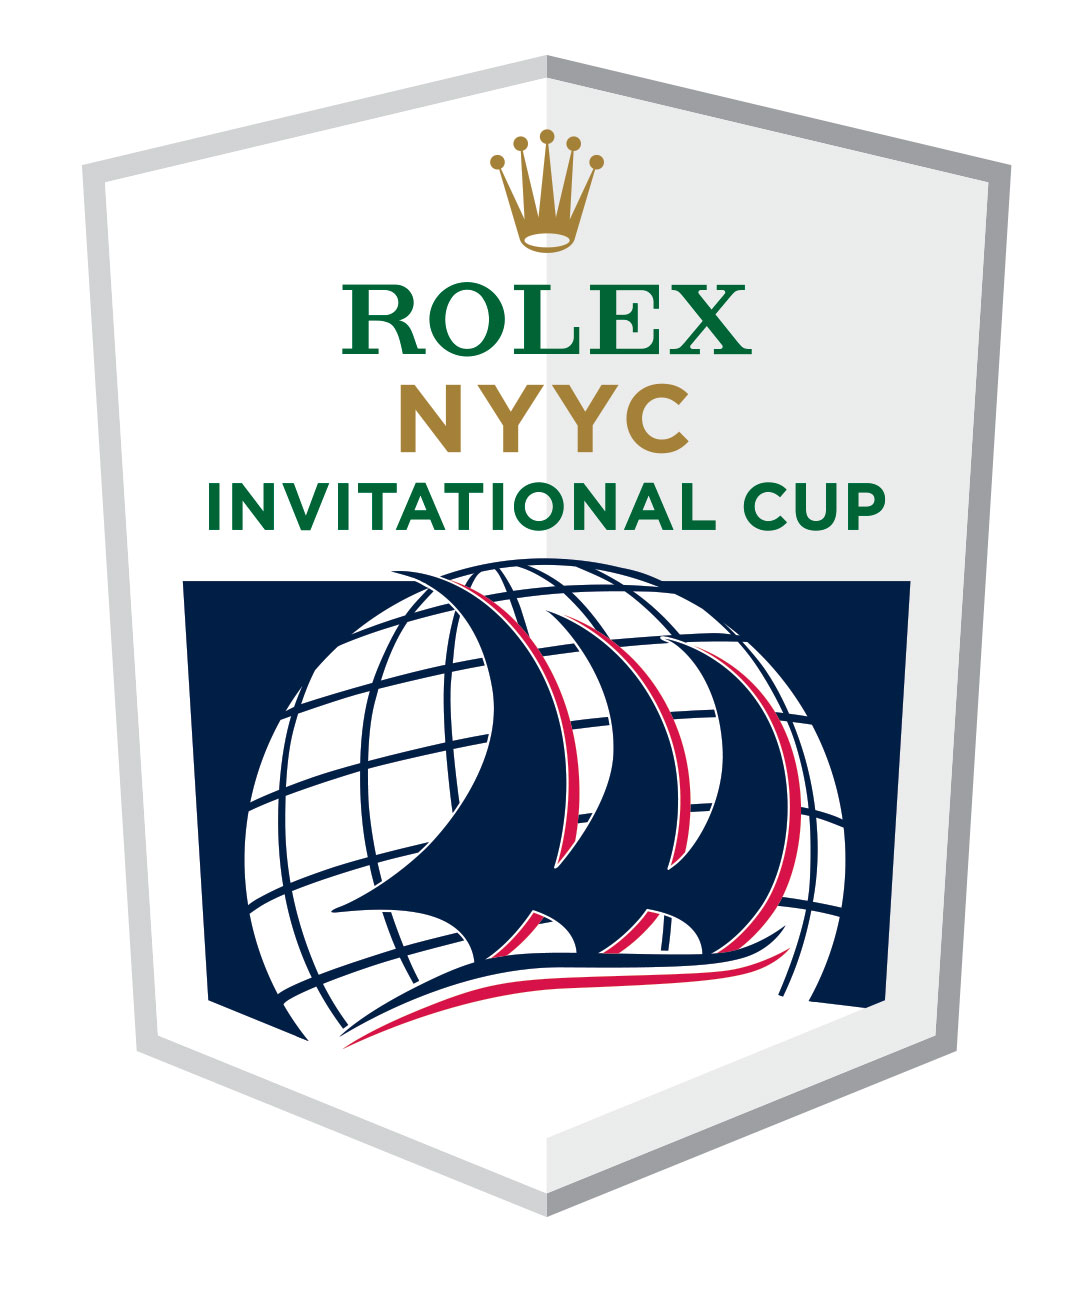 ROLEX NEW YORK YACHT CLUB INVITATIONAL CUP